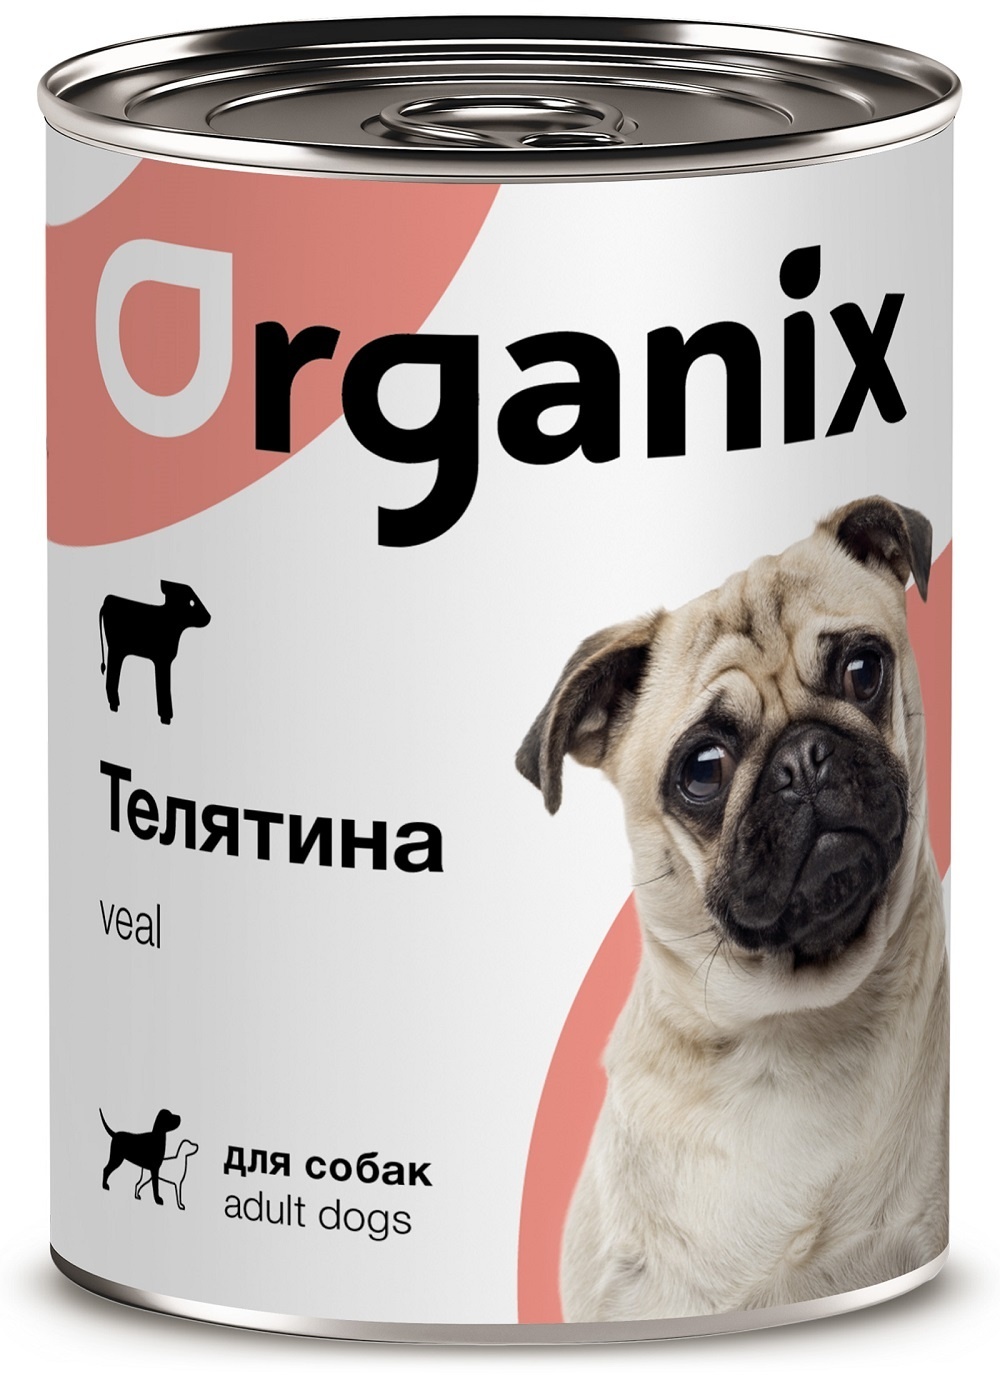 Organix консервы Organix консервы с телятиной для собак (100 г) organix консервы organix консервы для собак ягненок с рубцом и морковью 100 г